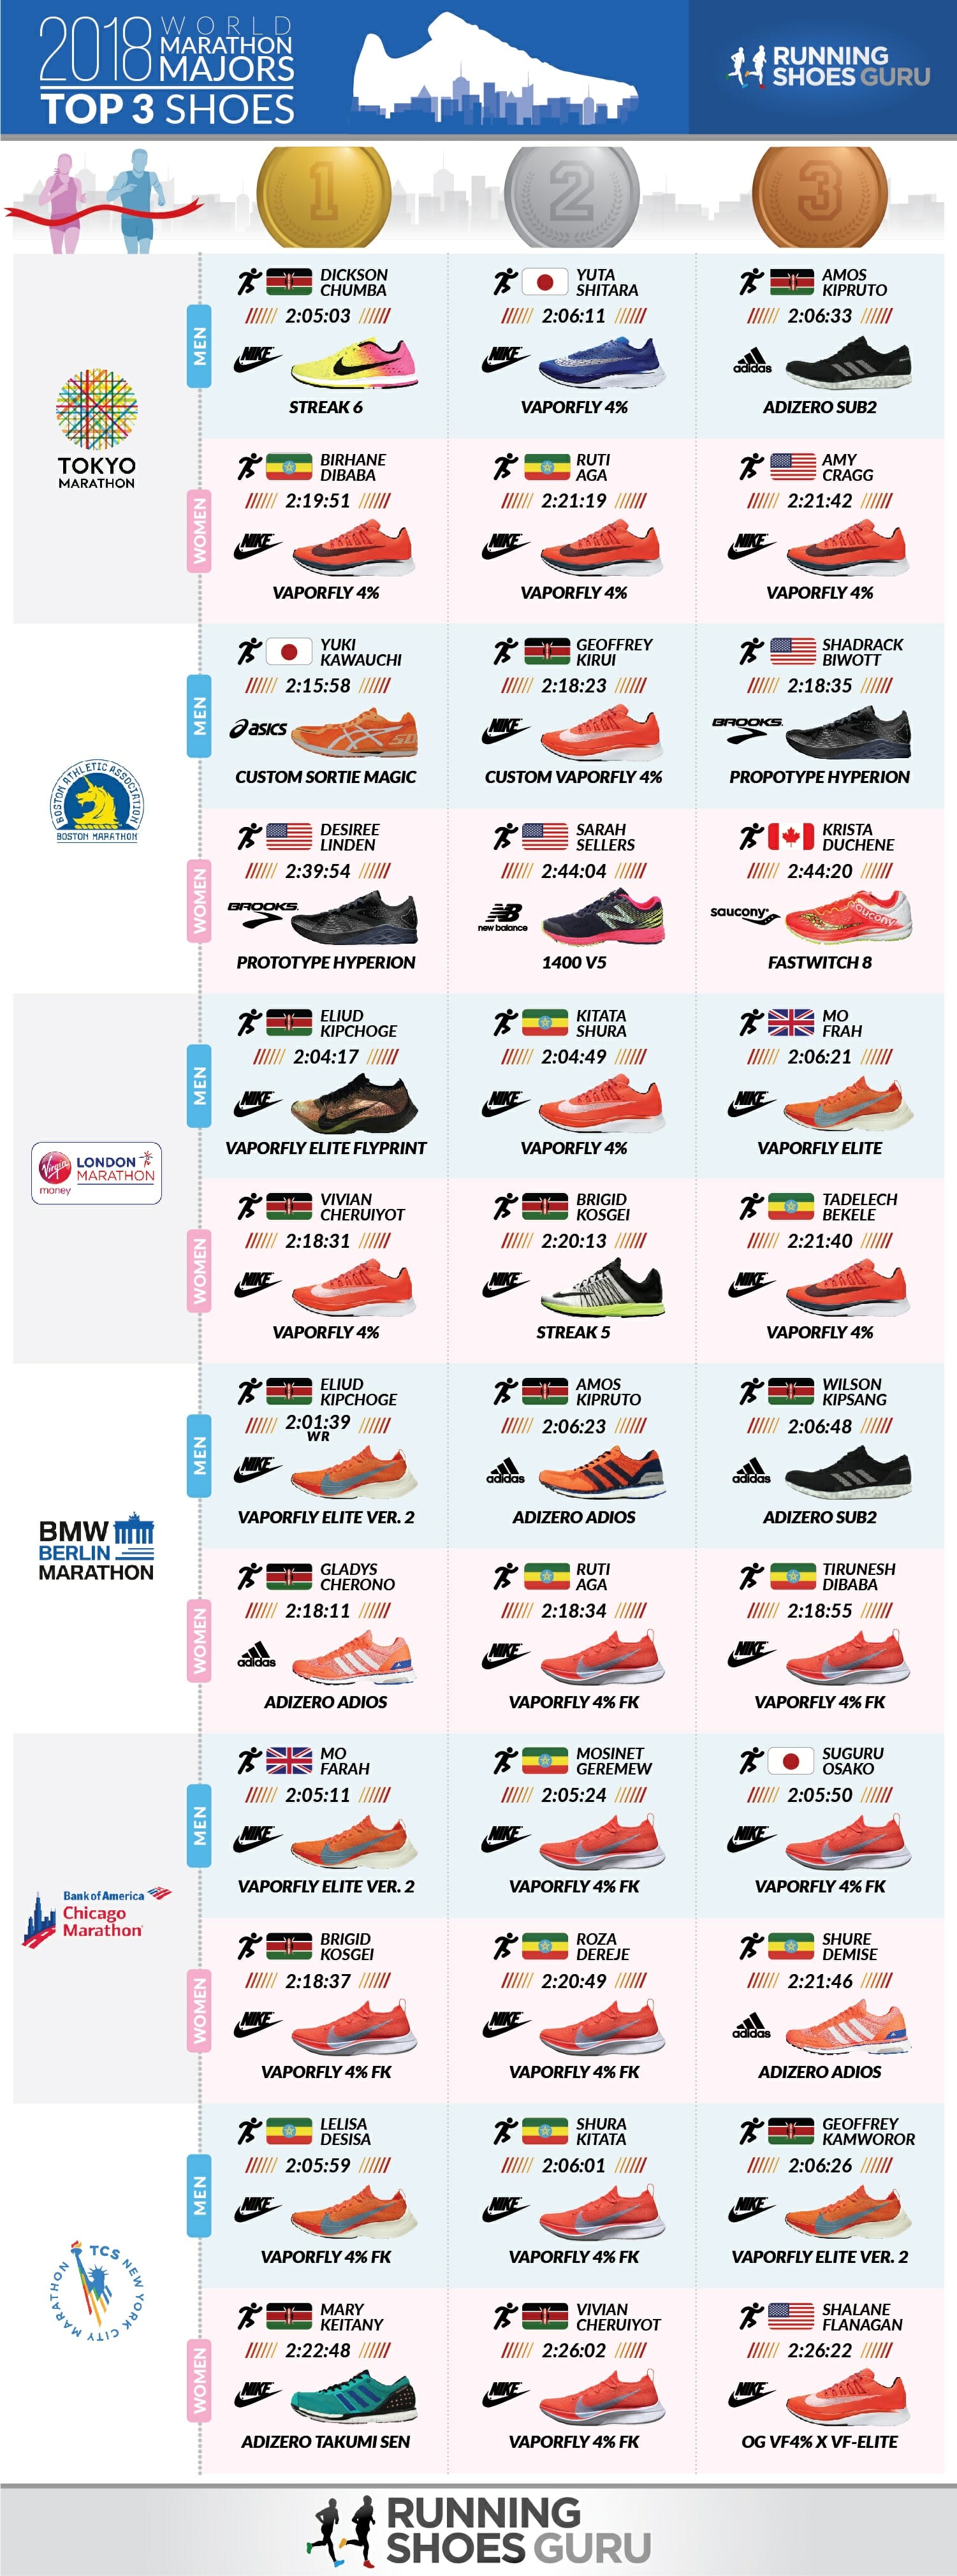 [Infographic] Tổng hợp giày chạy của các nhà vô địch 2018 World Marathon Majors - top 3 shoes 2018 marathon majors 01